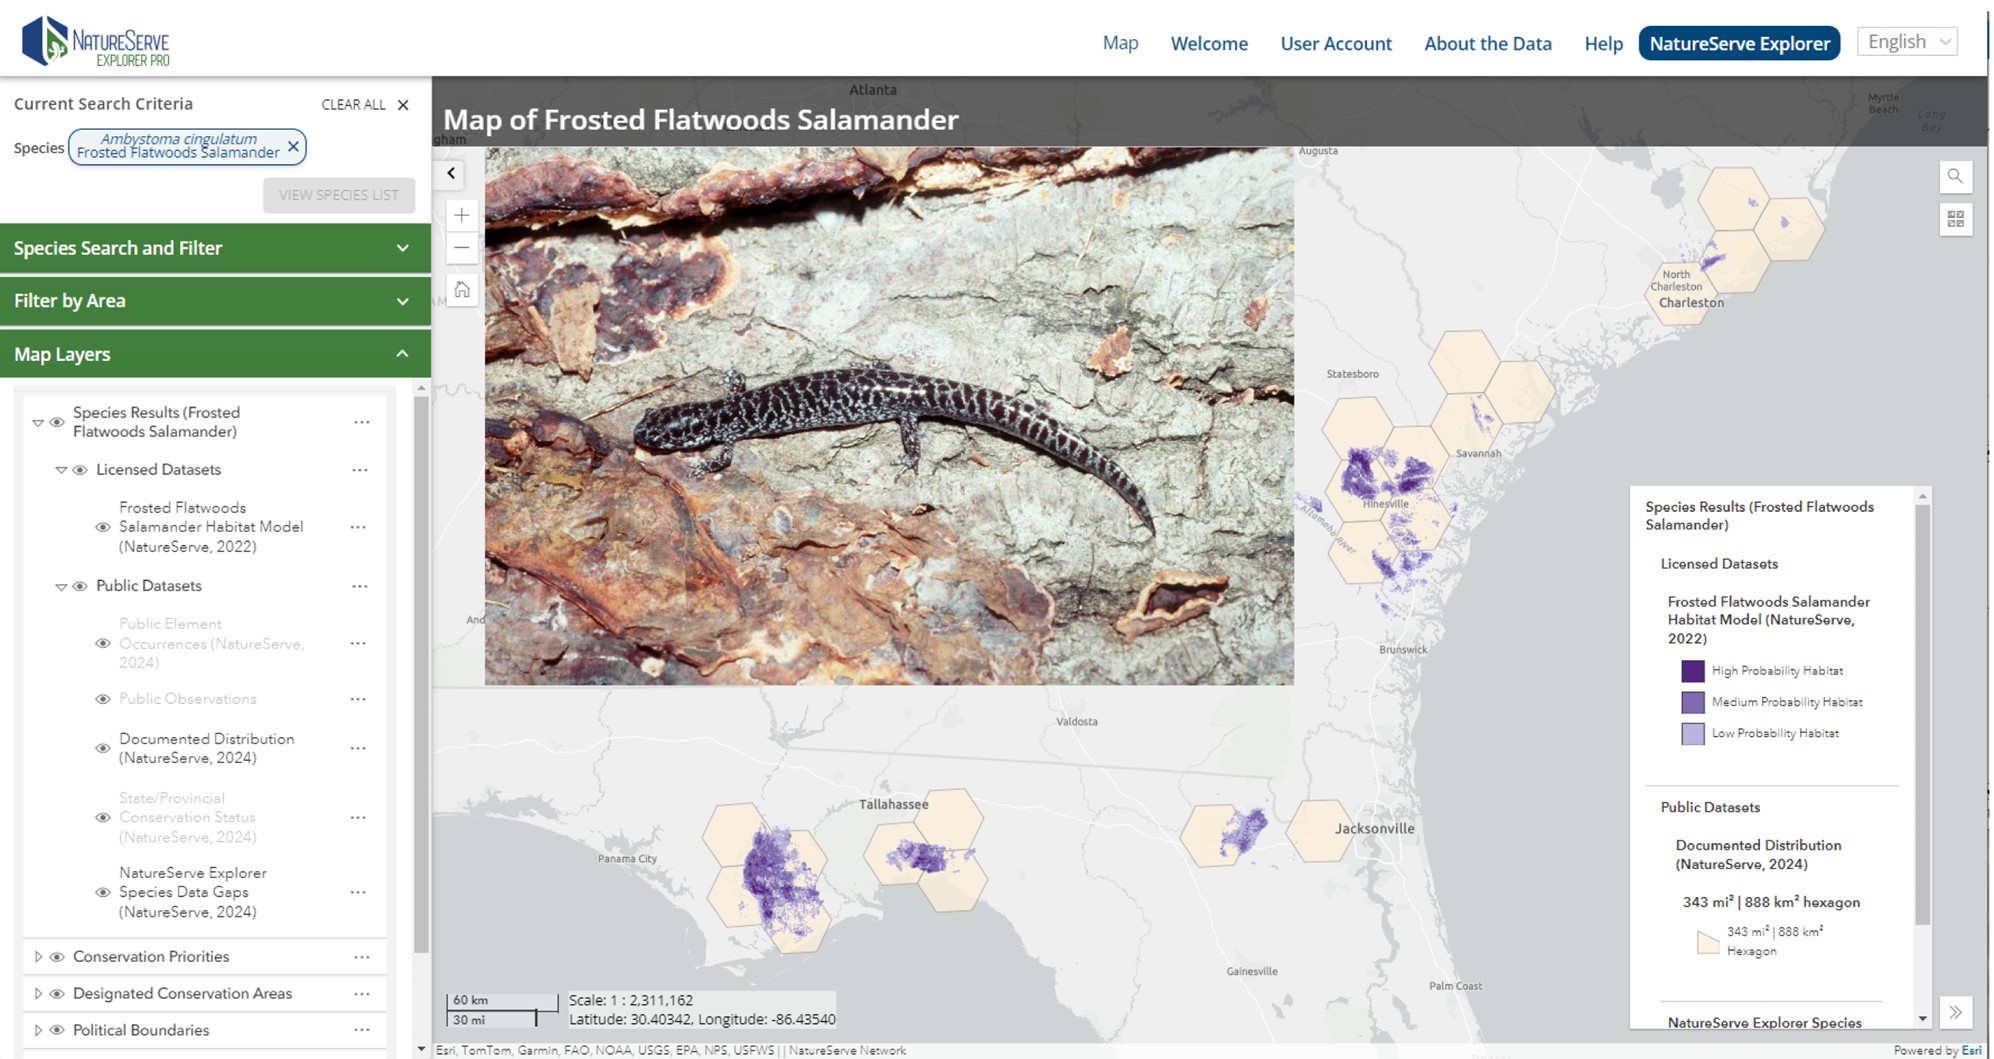 Un mapa de Frosted Flatwoods Salamander predijo el hábitat con una foto insertada de una salamandra manchada.